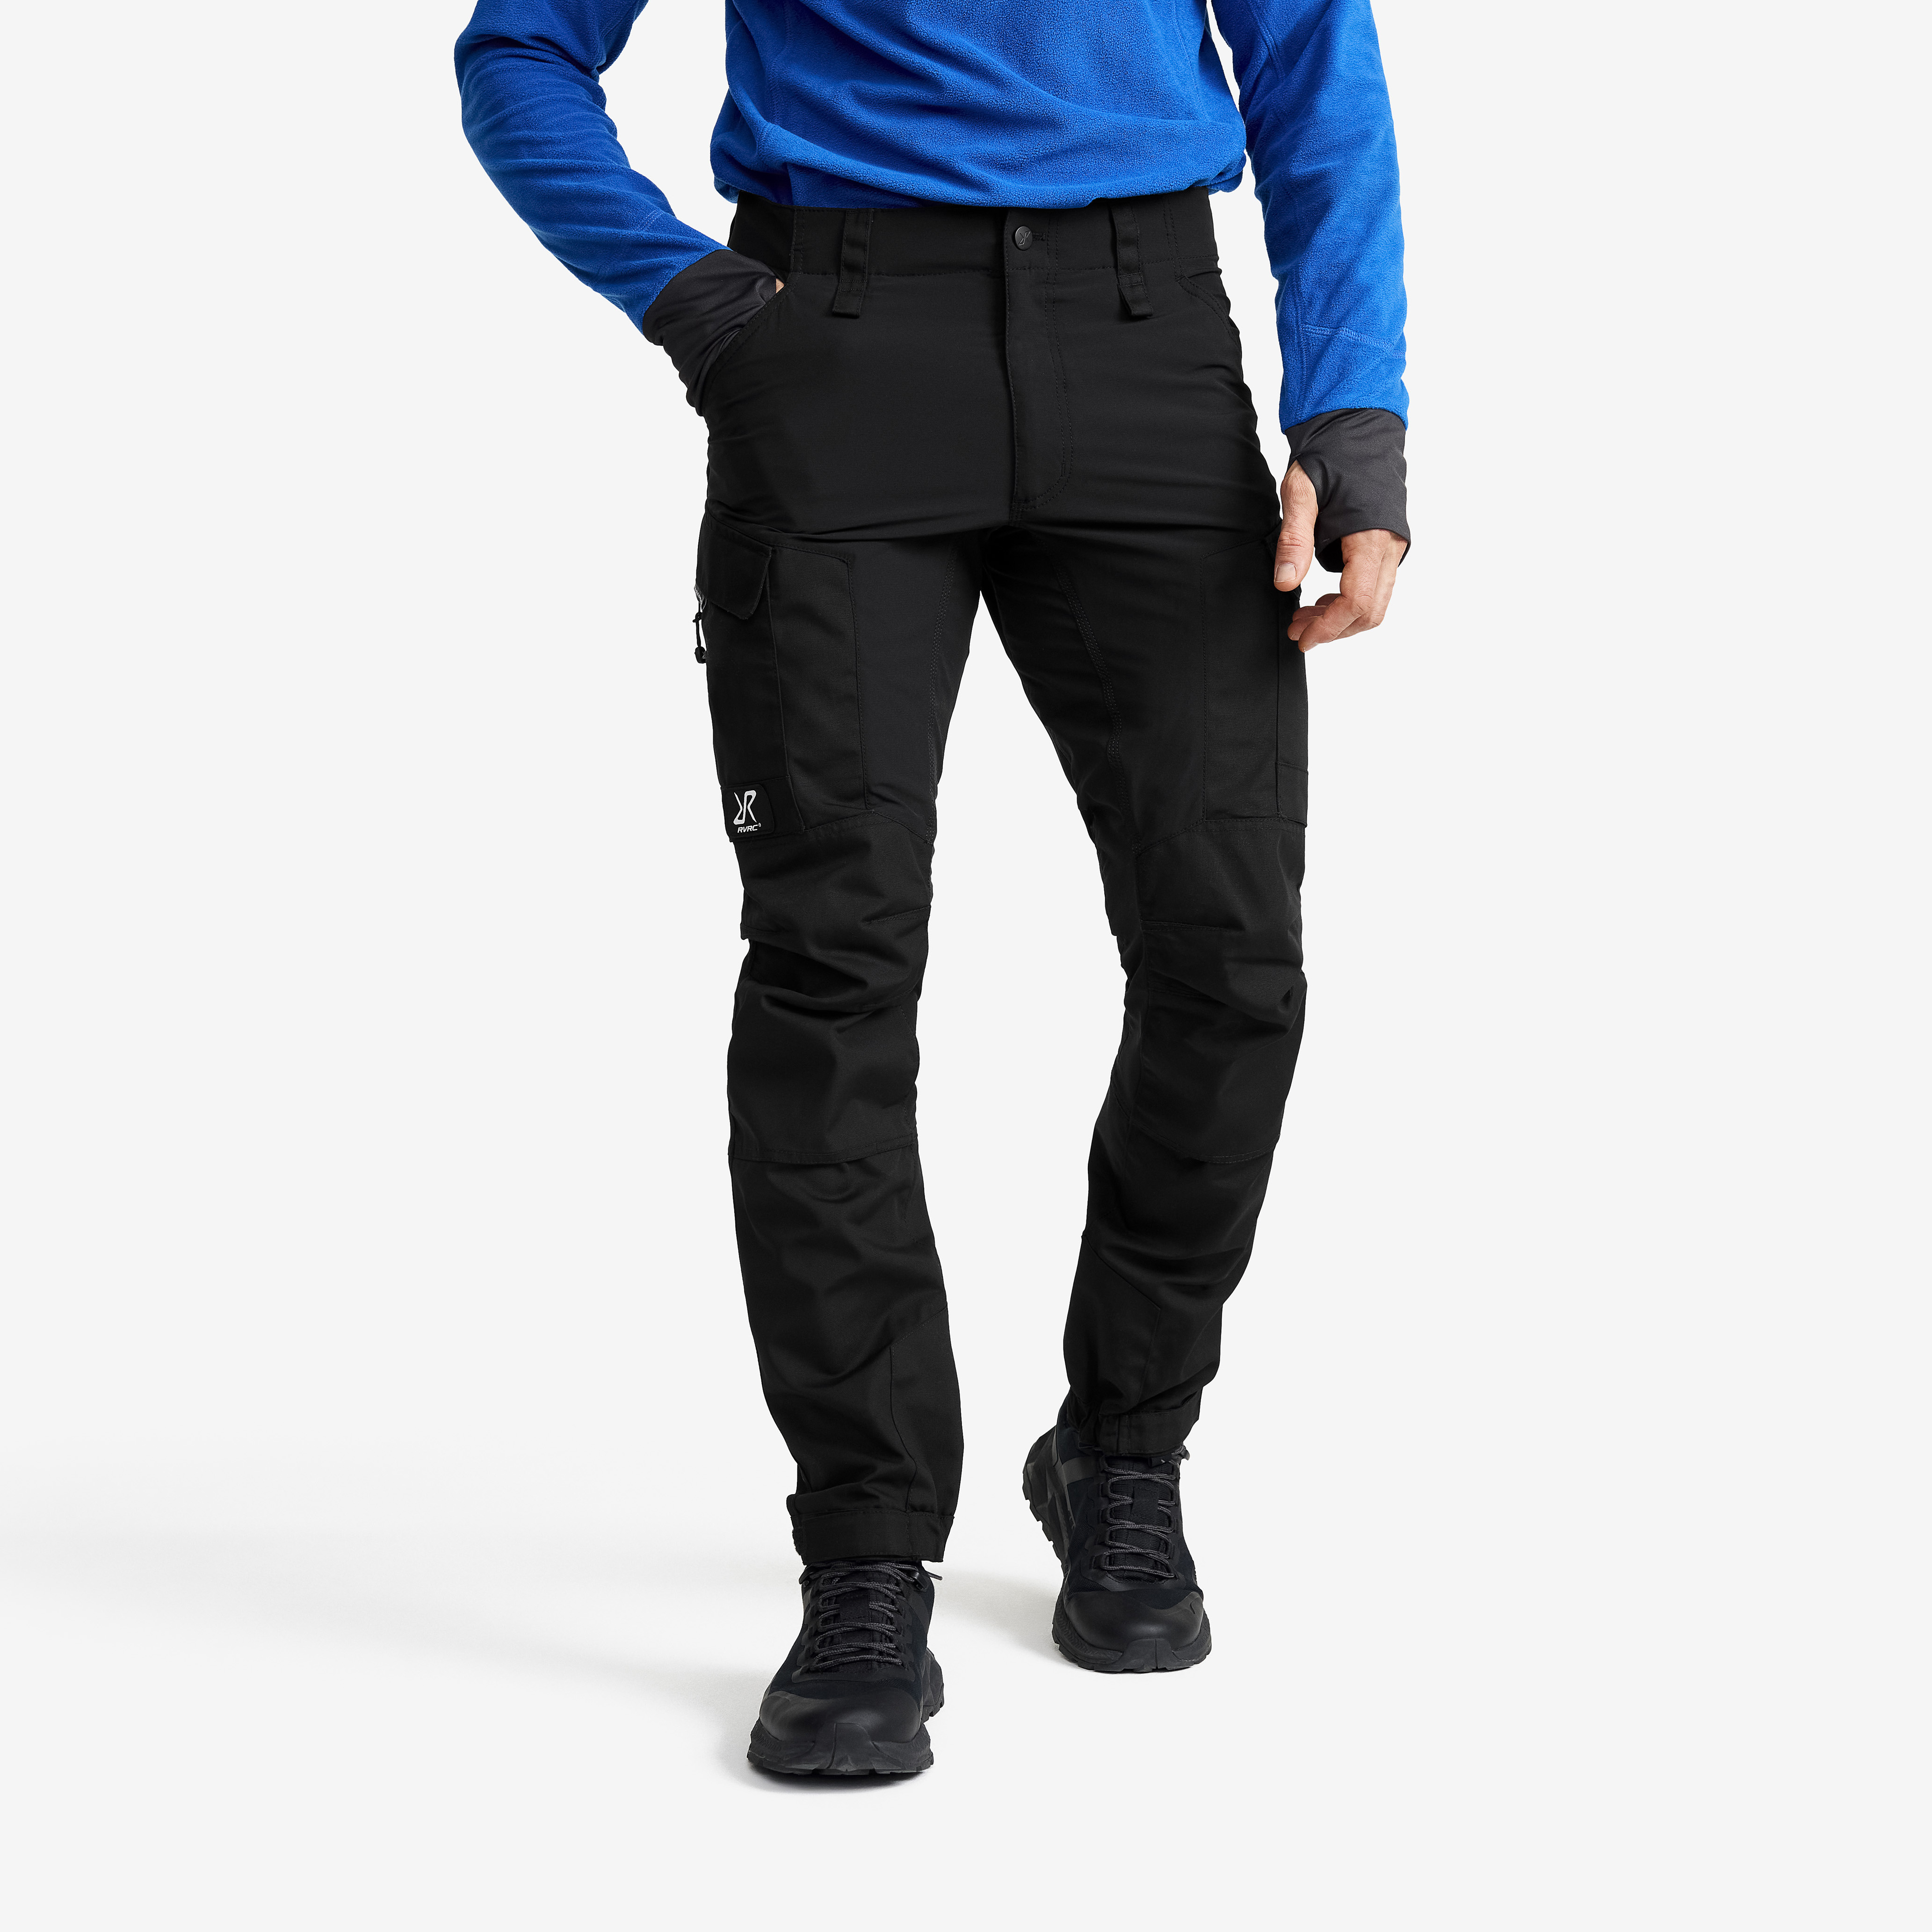 RVRC GP outdoor bukser for mænd i sort